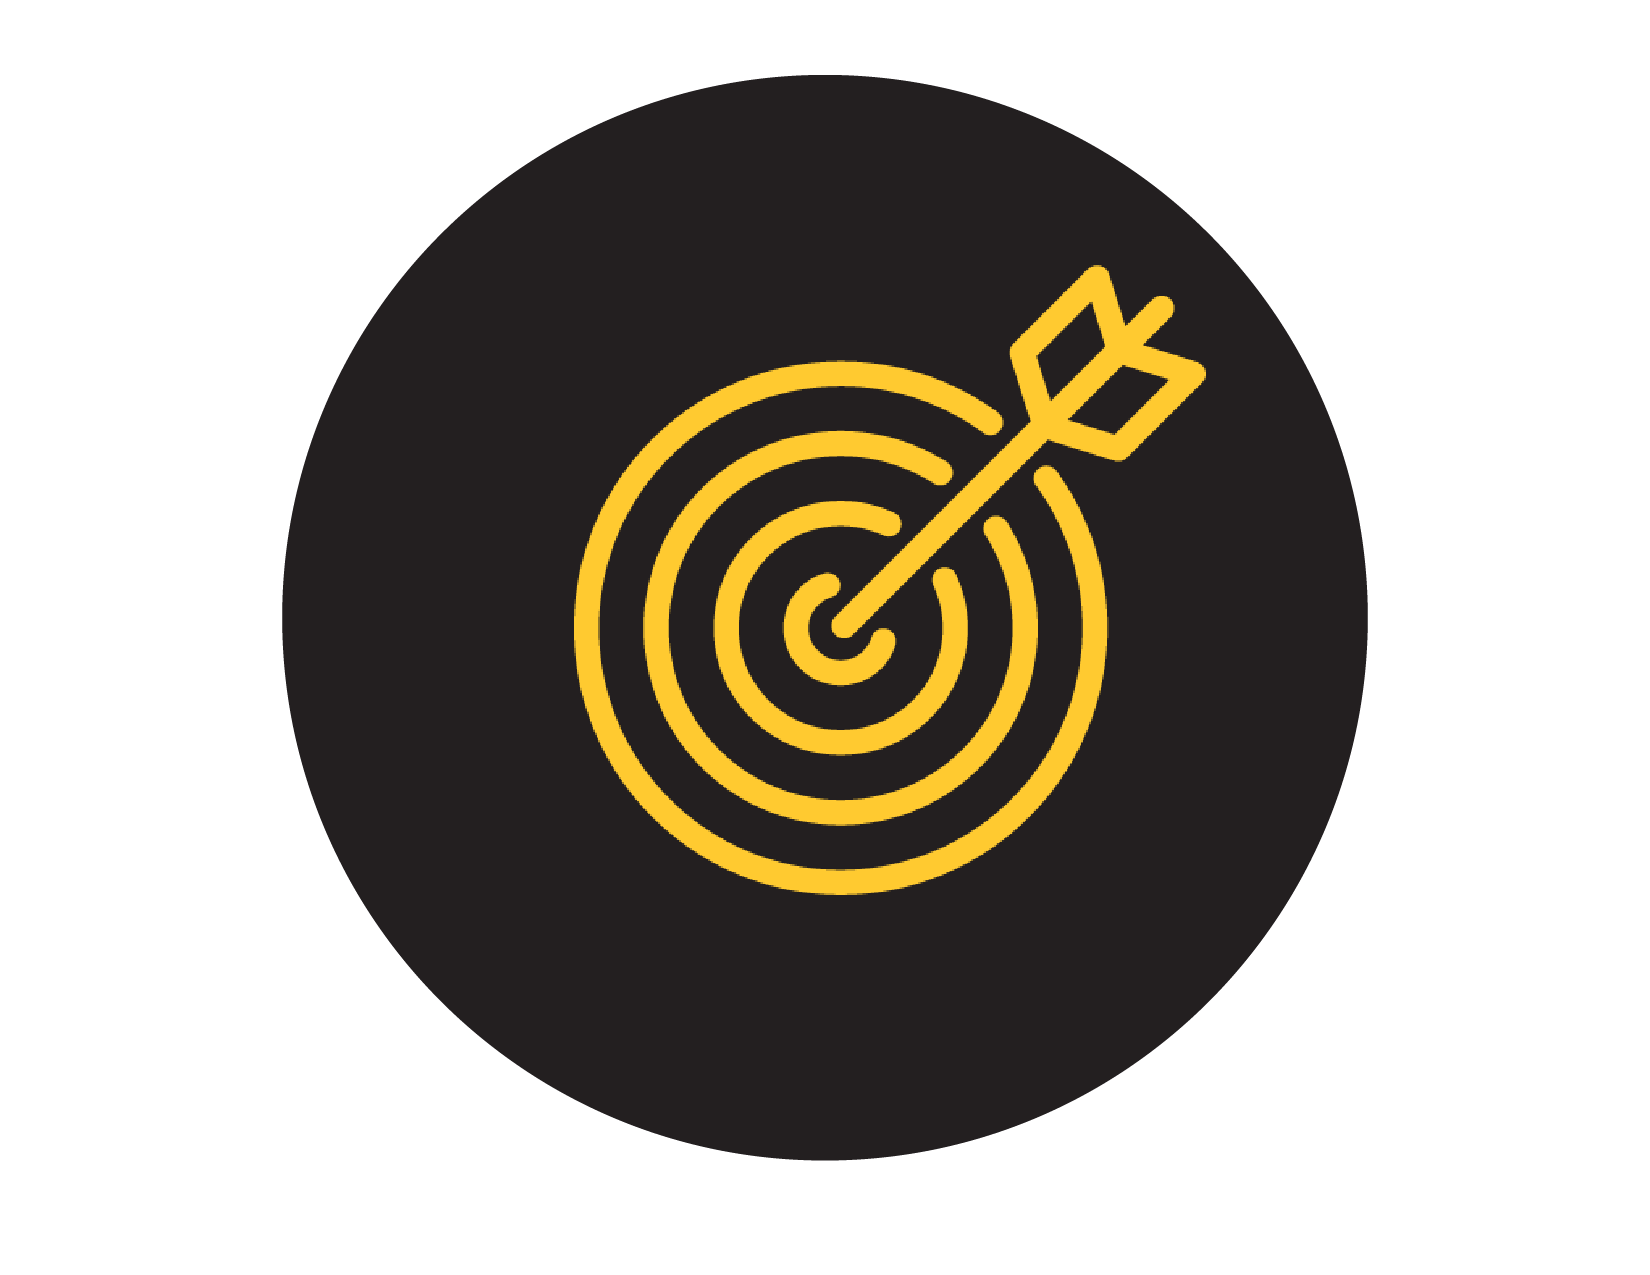 Target with an arrow through the bullseye icon